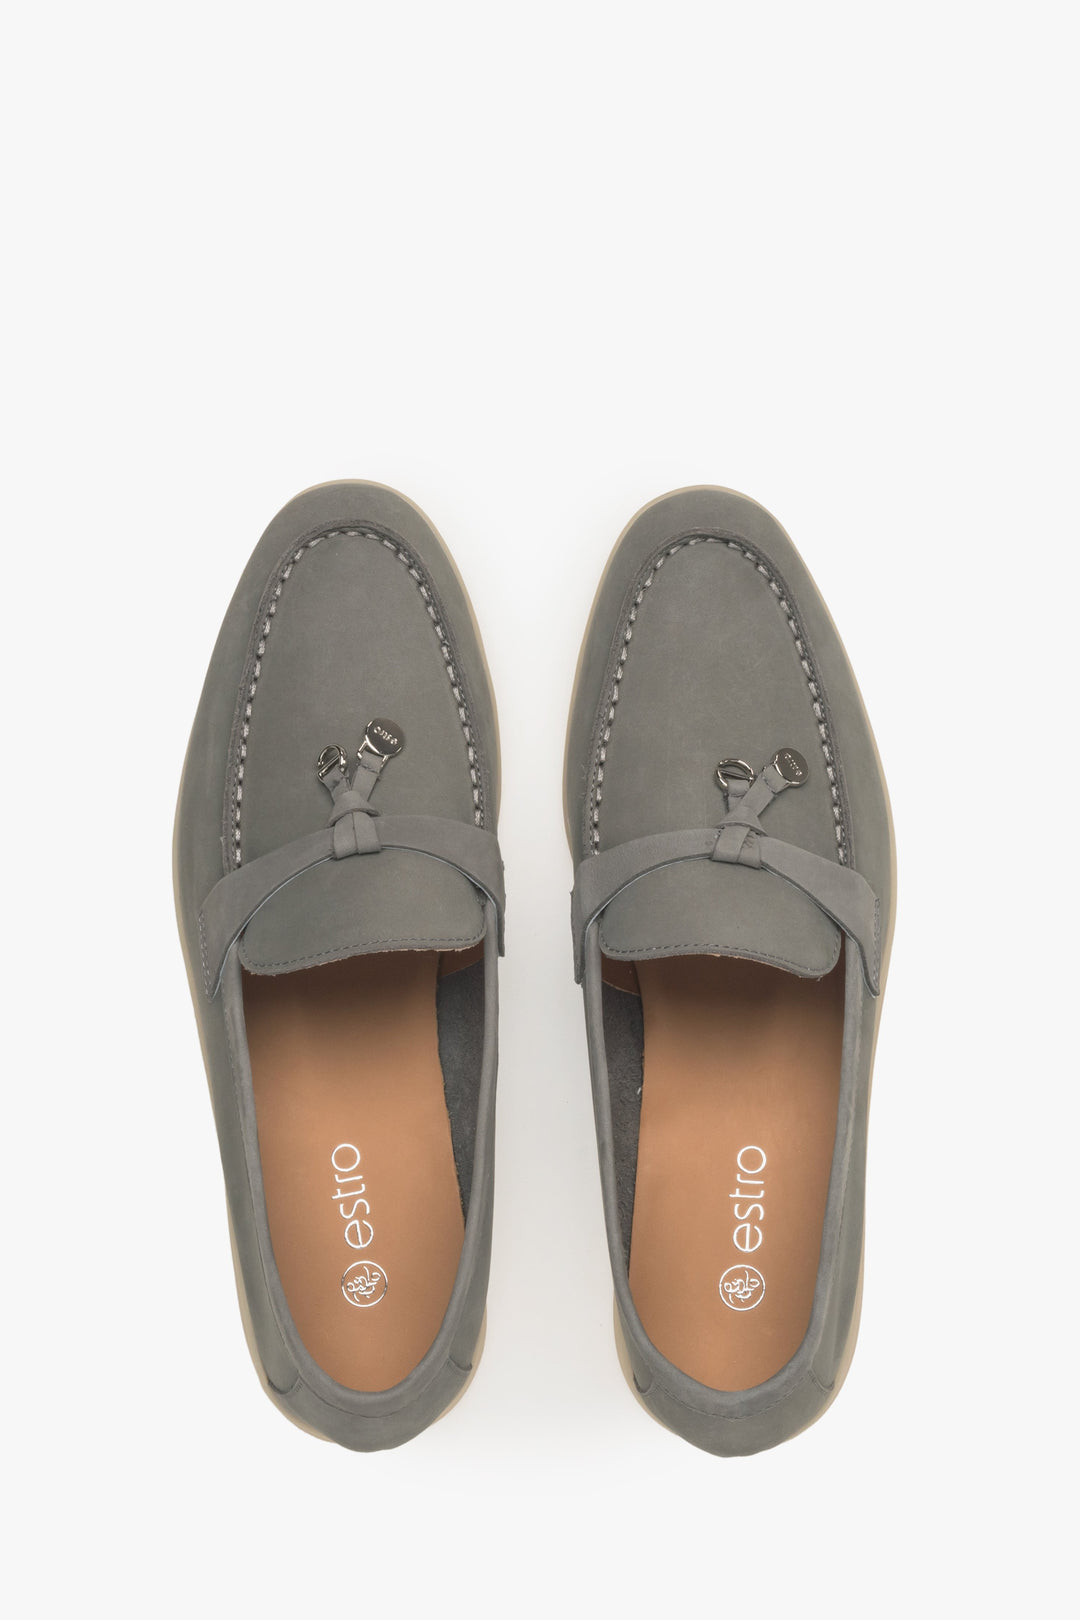 Women's grey tassel loafers Estro.